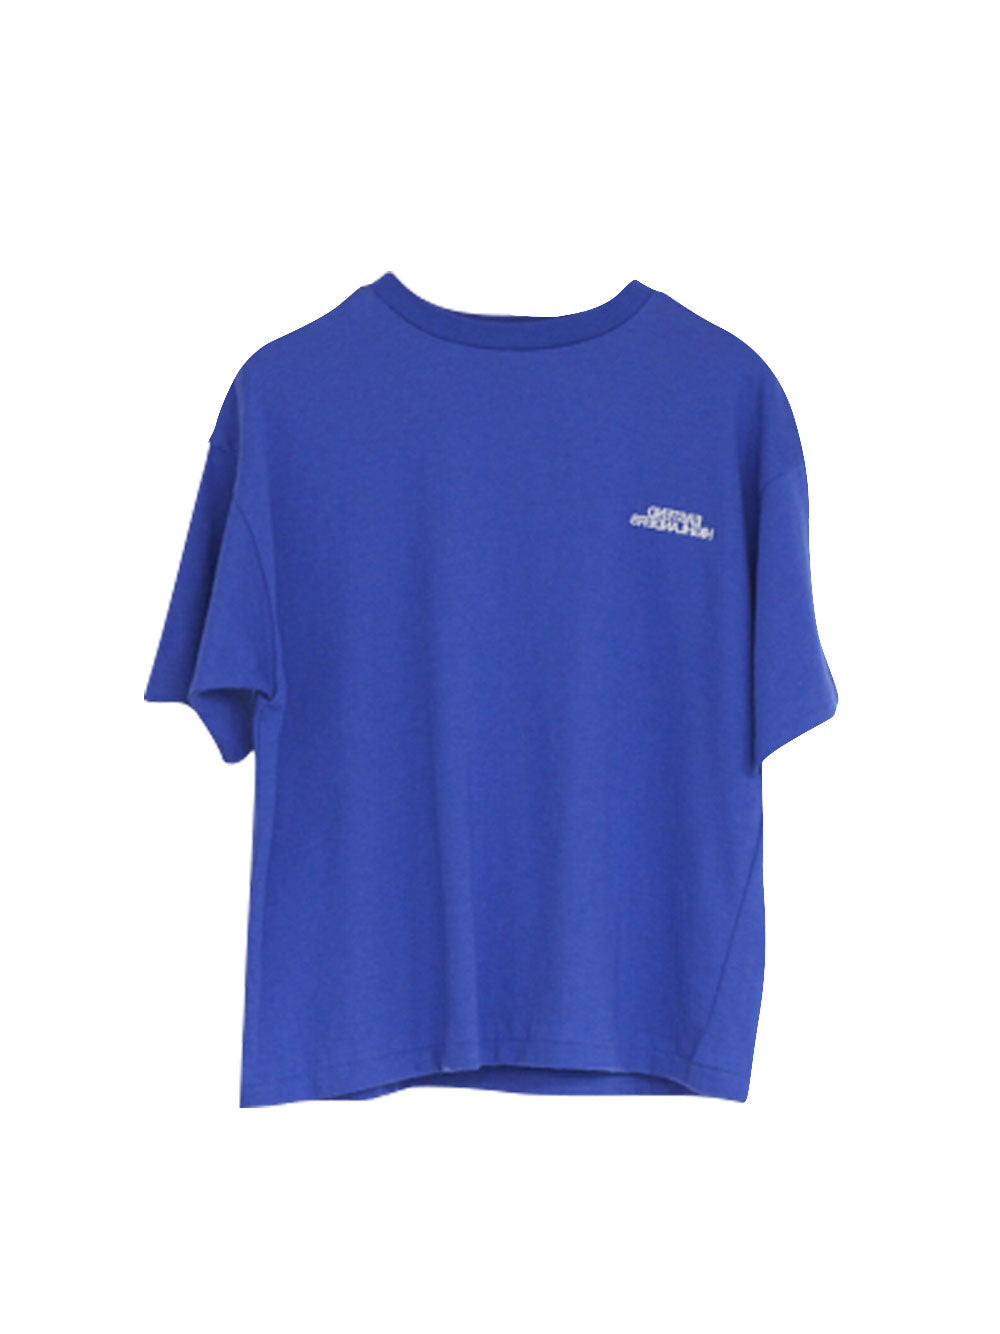 Round Neck Blue T-Shirt